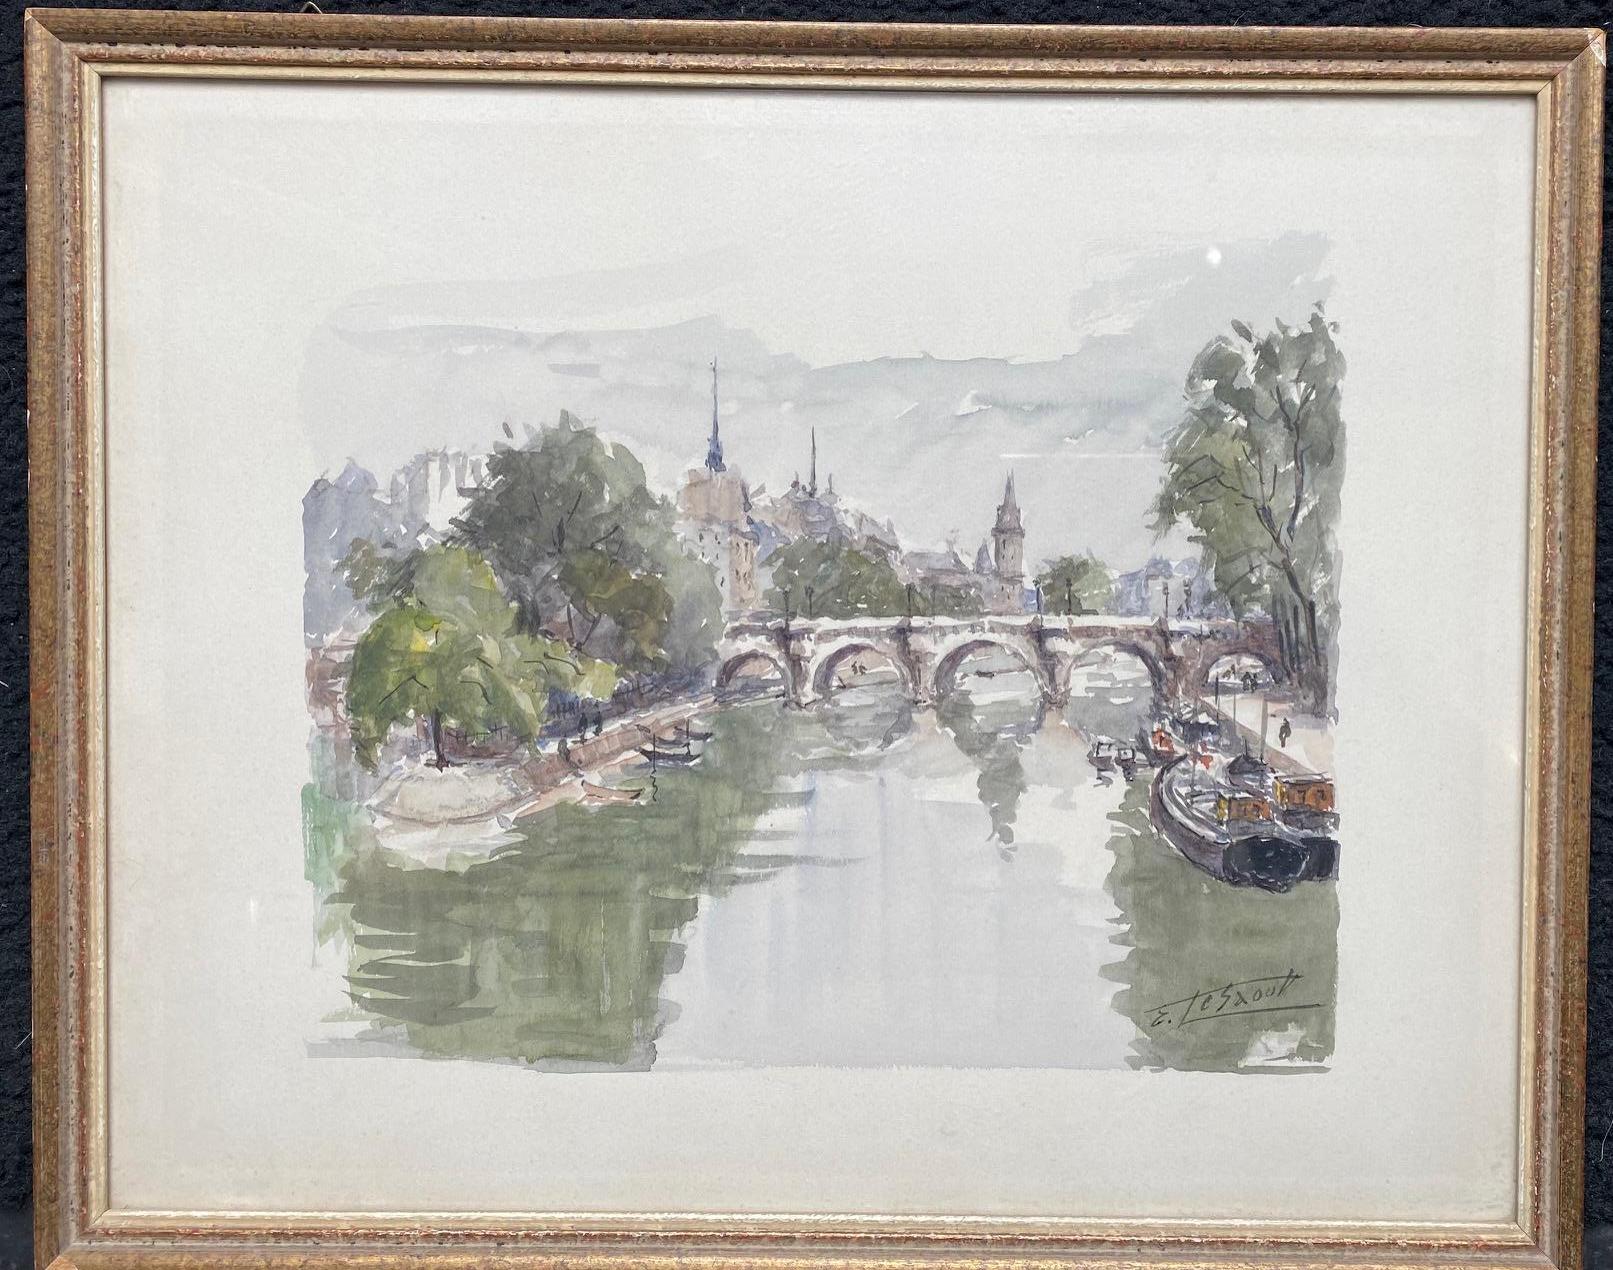 Paris Bridge, France by Emile Lesaout - Watercolor on paper 23x28 cm 1